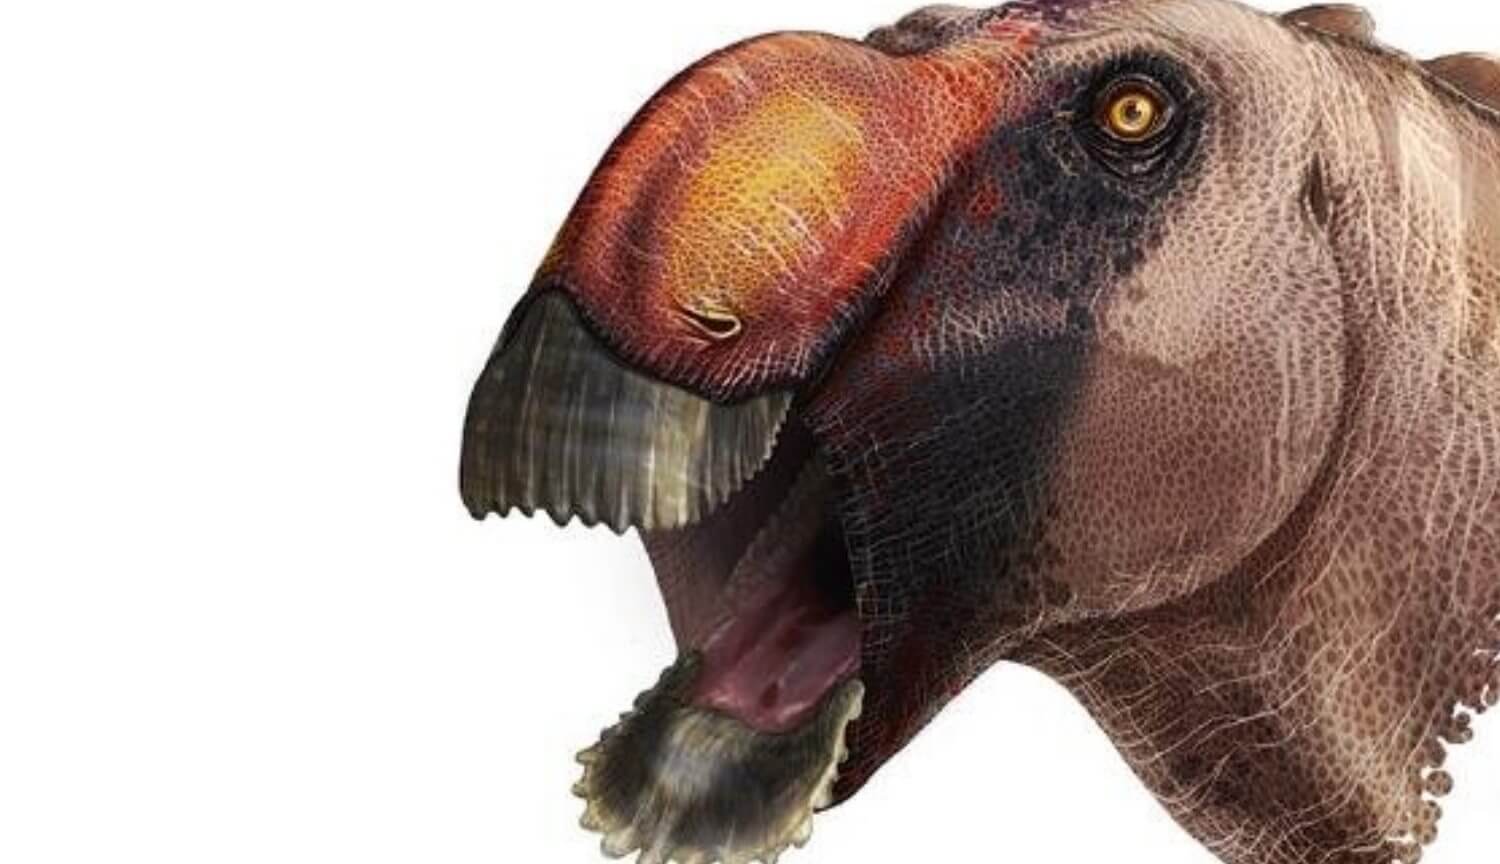 وقد اكتشف العلماء ديناصور جديد. وقال انه يتطلع مثل البطة